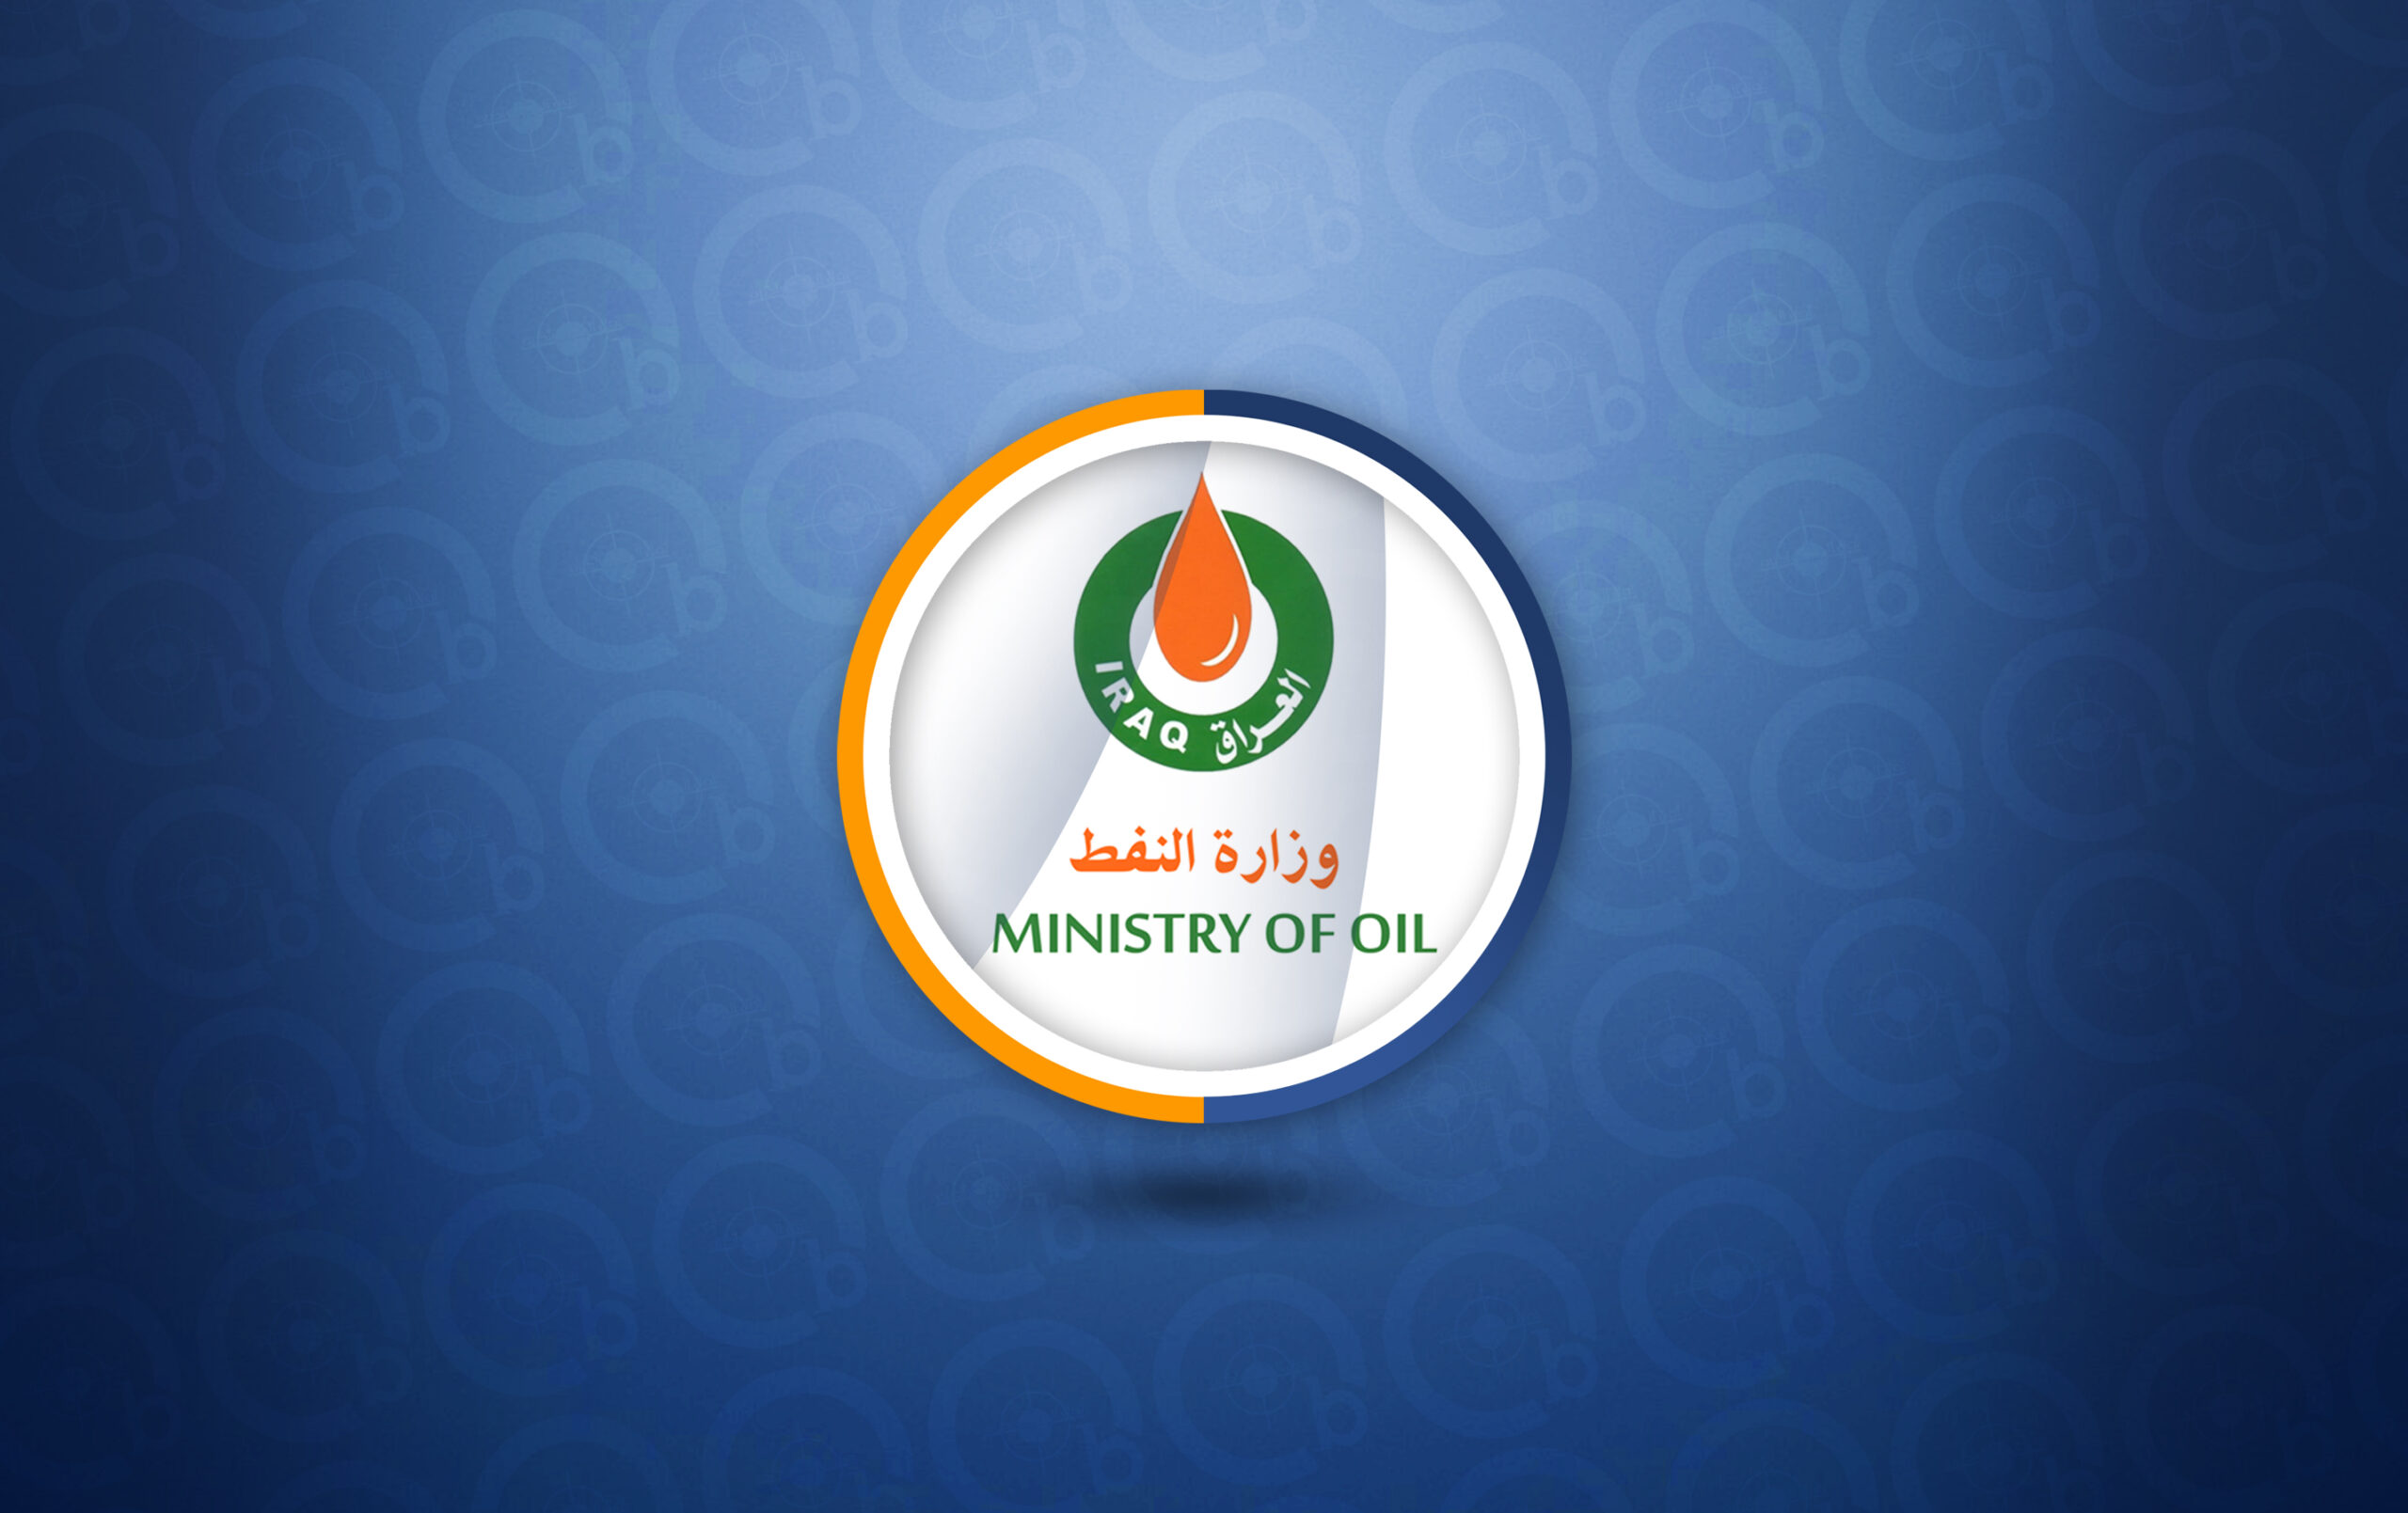 وزارة النفط:إنجاز حفر (52) بئراً نفطياً خلال الربع الأول من العام الحالي